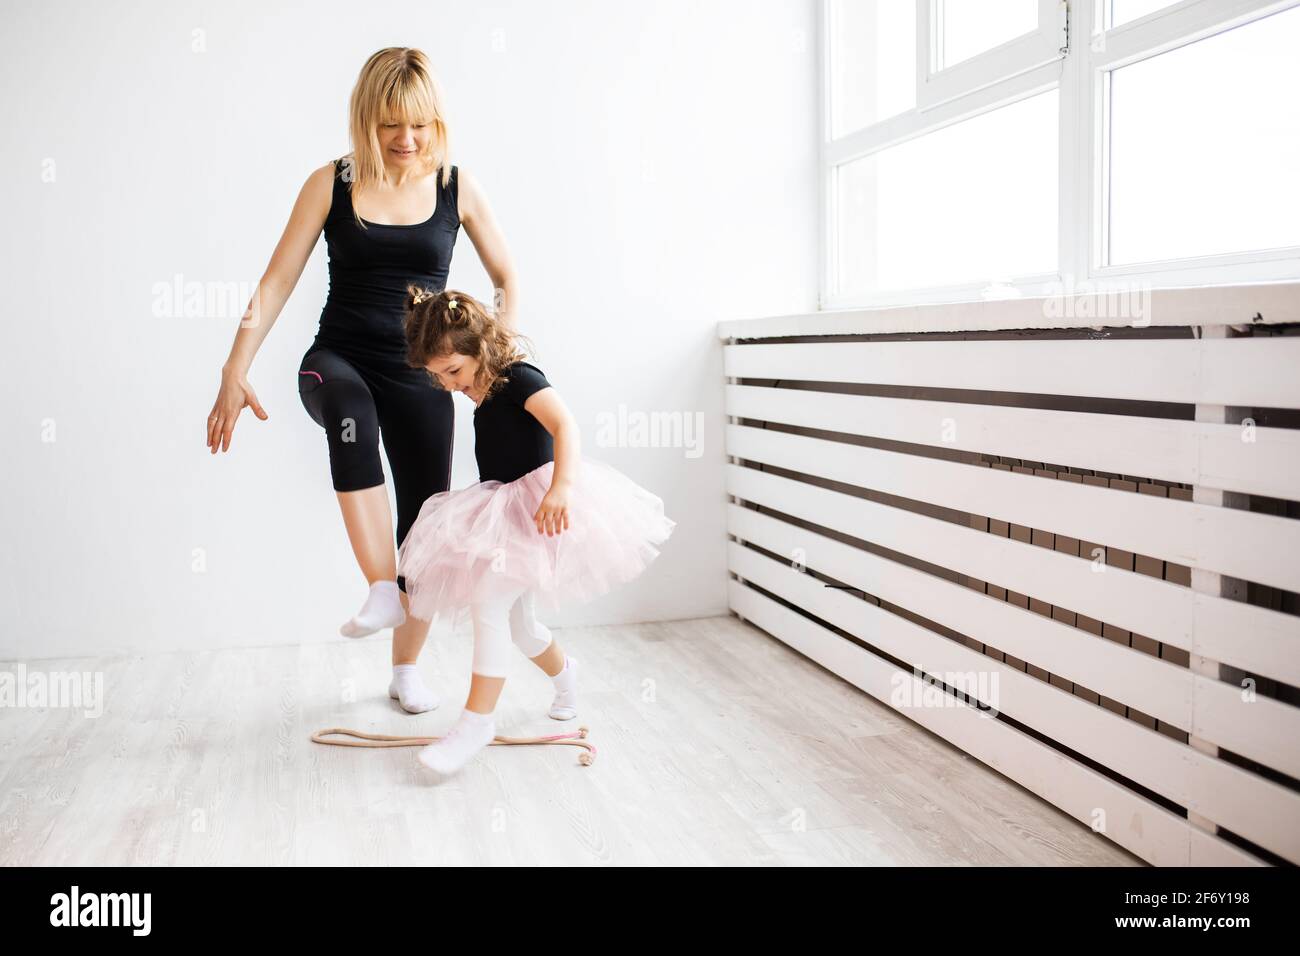 Femme maman se livre à danser avec sa petite fille, est engagée dans la gymnastique dans un intérieur blanc, photo de style de vie Banque D'Images